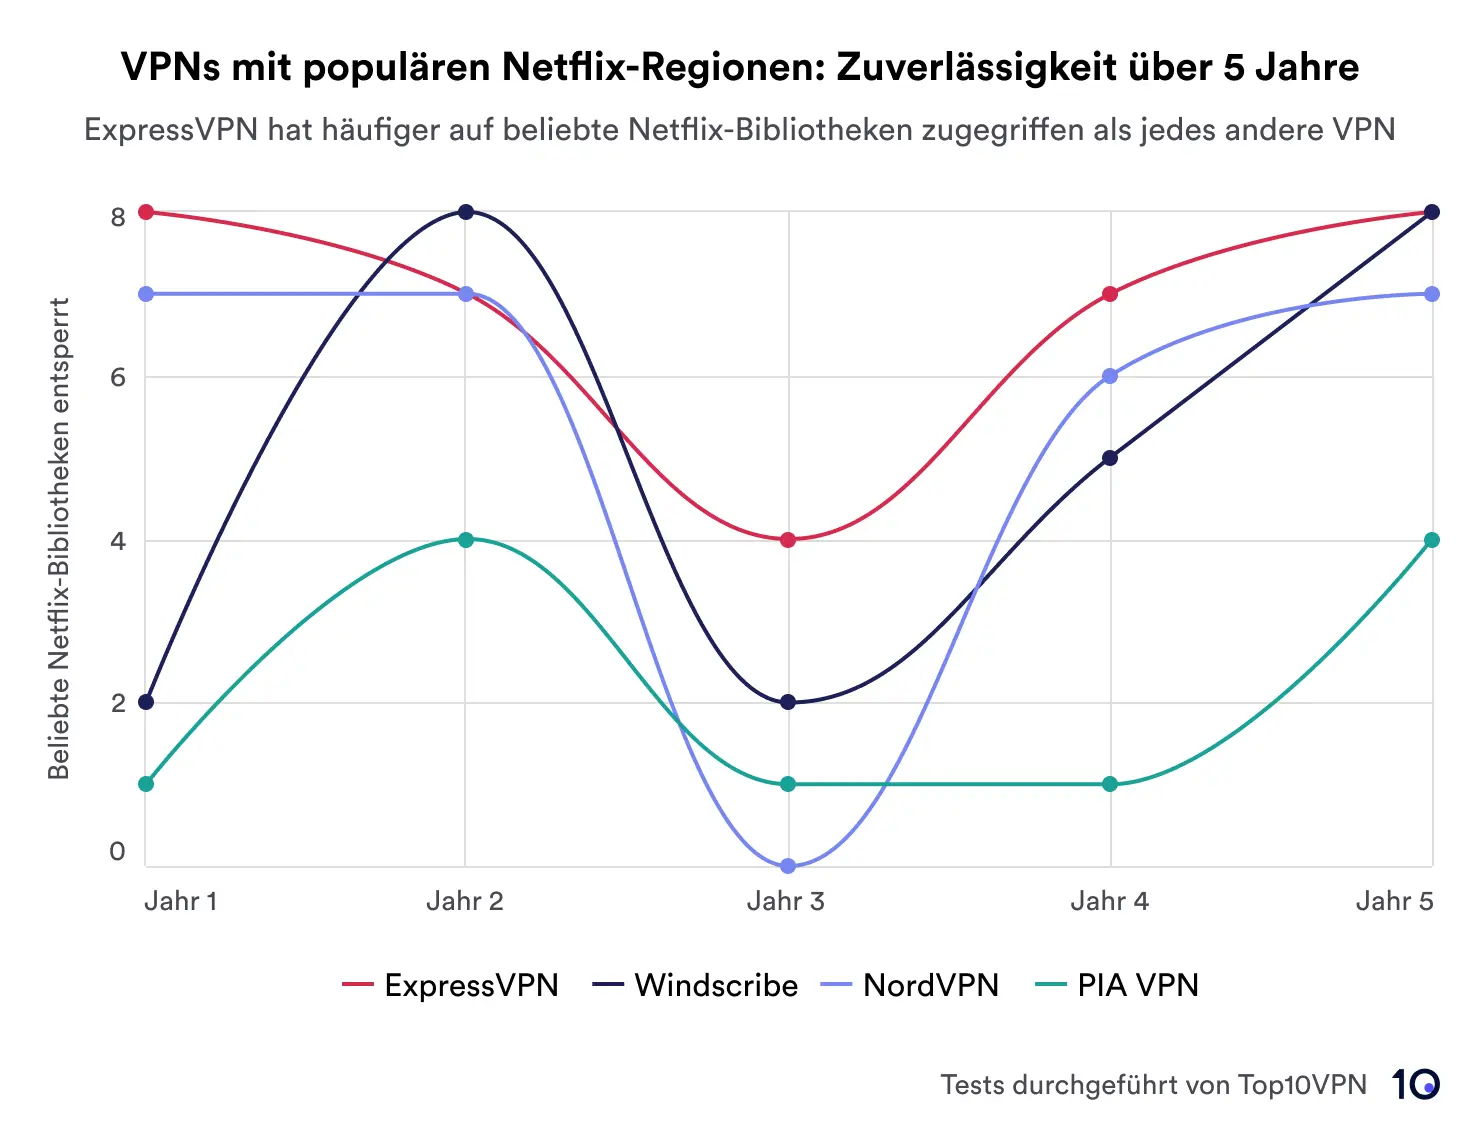 Ein Liniendiagramm, das die Leistung von vier VPNs – ExpressVPN, Windscribe, NordVPN und PIA VPN – bei der Entsperrung von Netflix-Regionen über einen Zeitraum von fünf Jahren zeigt. ExpressVPN ist führend in Sachen Zuverlässigkeit.